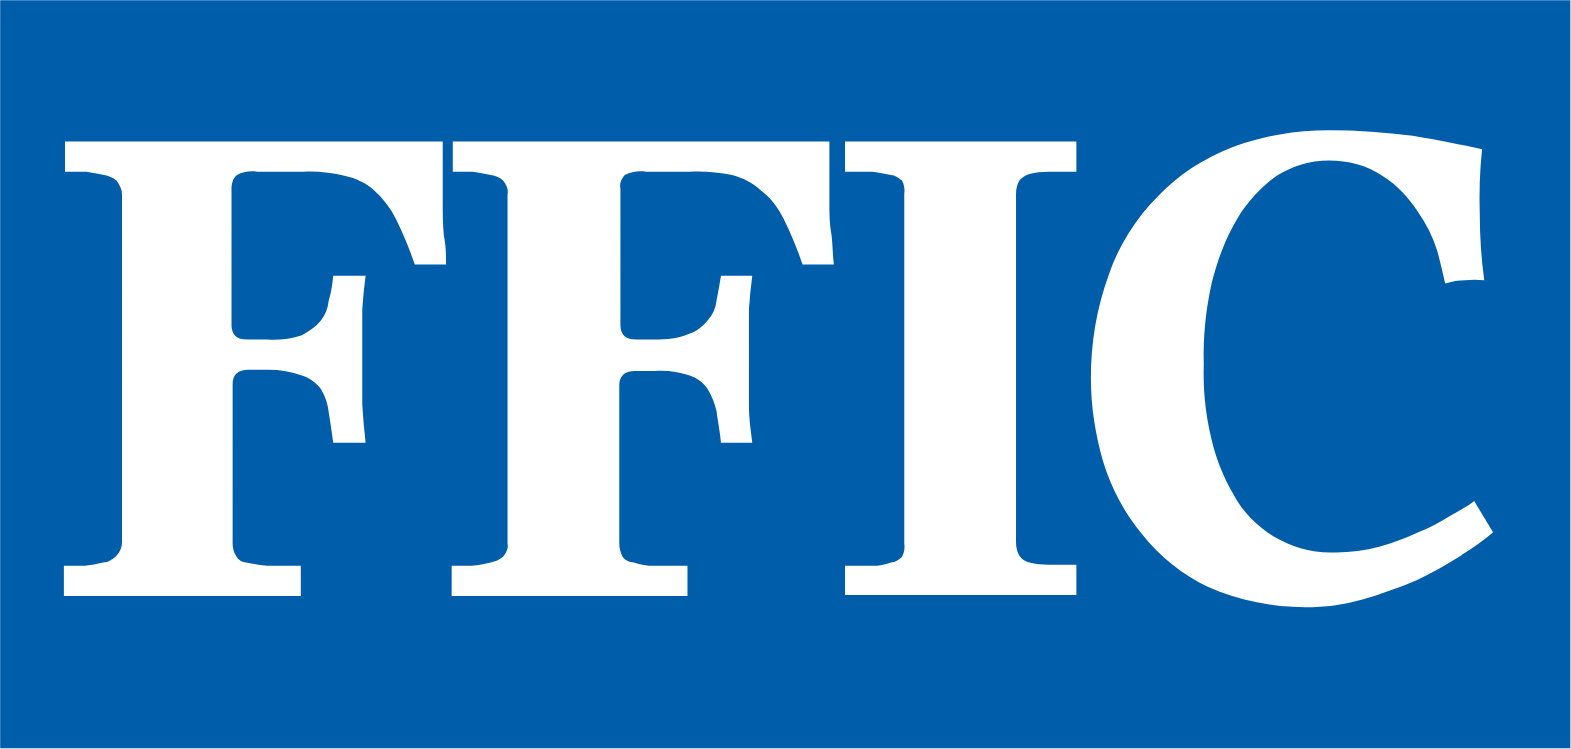 Flushing Financial Corp Logo (transparentes PNG)